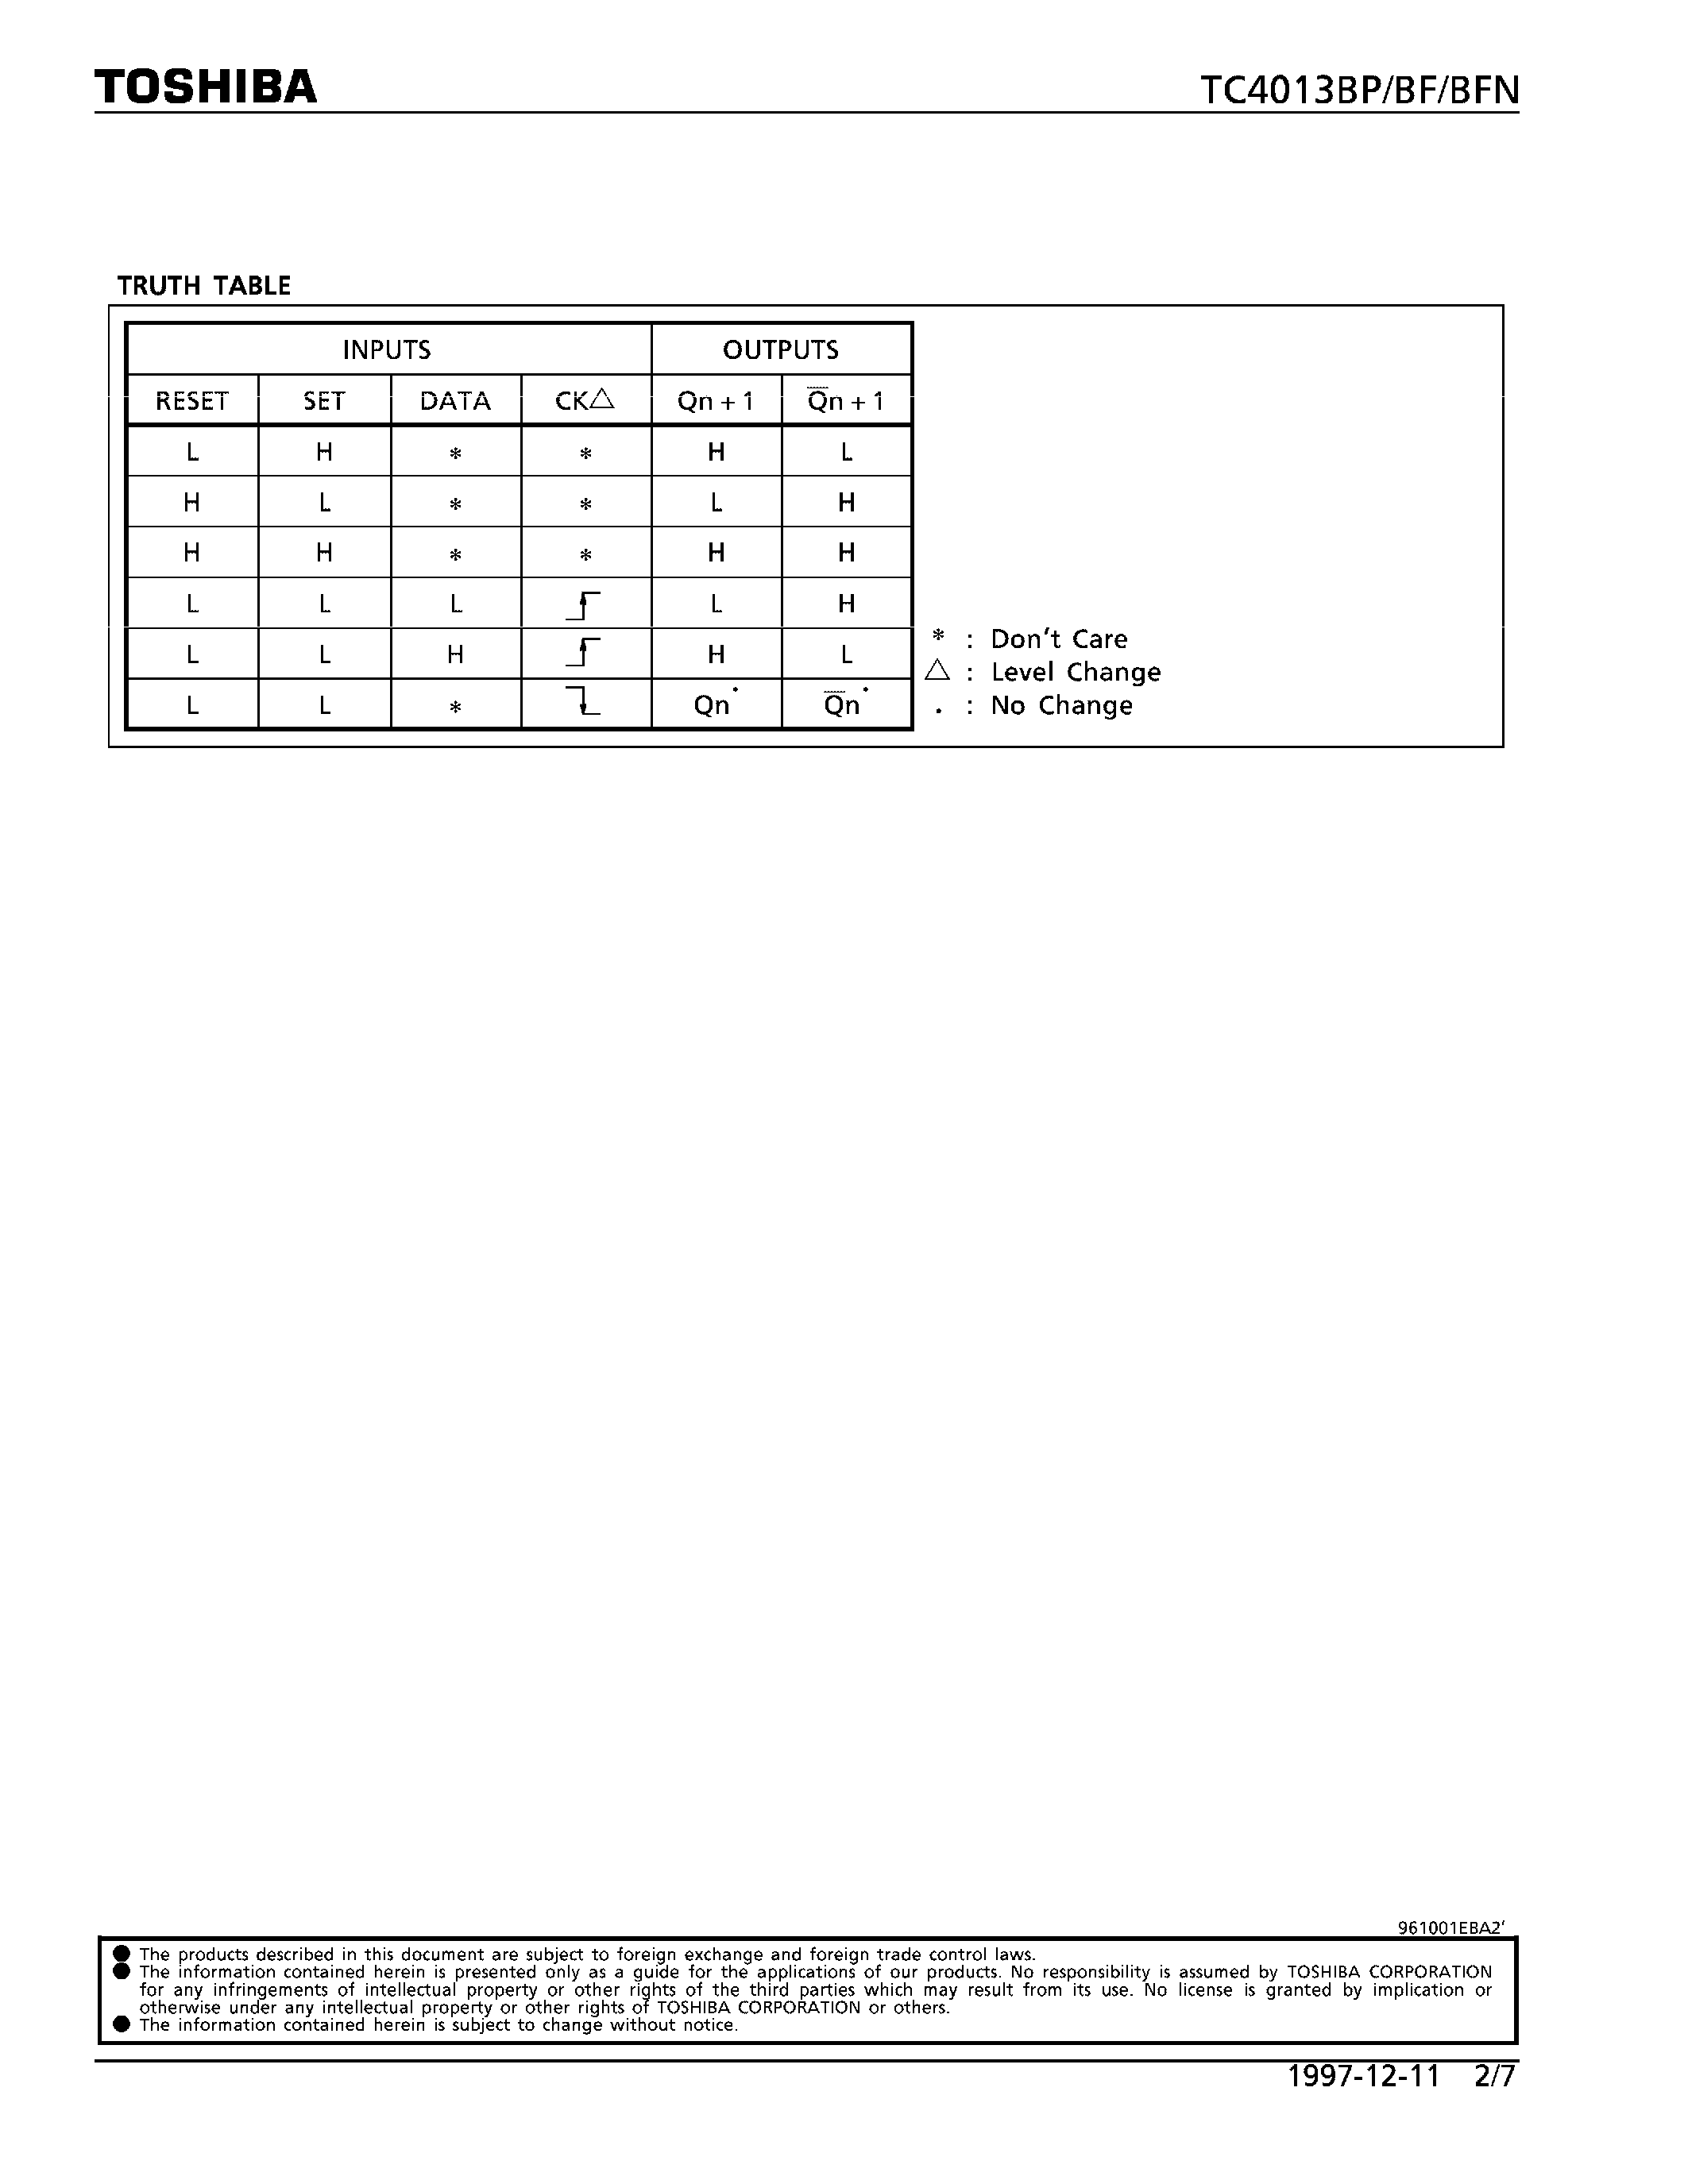 Datasheet TC4013 - DUAL D-TYPE FLIP-FLOP page 2